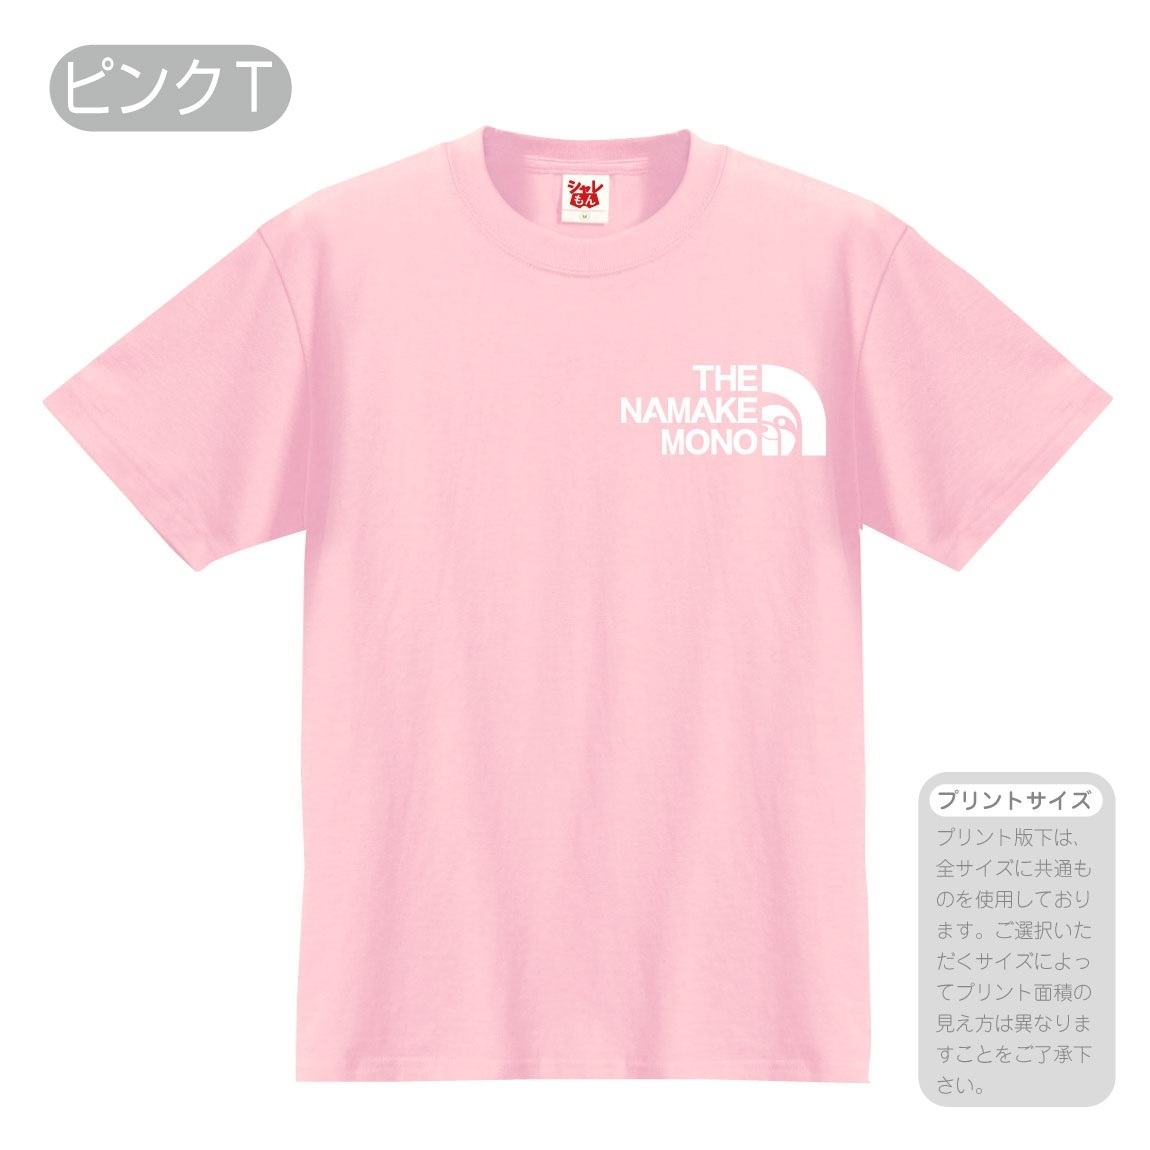 ナマケモノ アニマル おもしろ Tシャツ ( ナマケモノ フェイス 選べる8カラー ) かわいい シ...